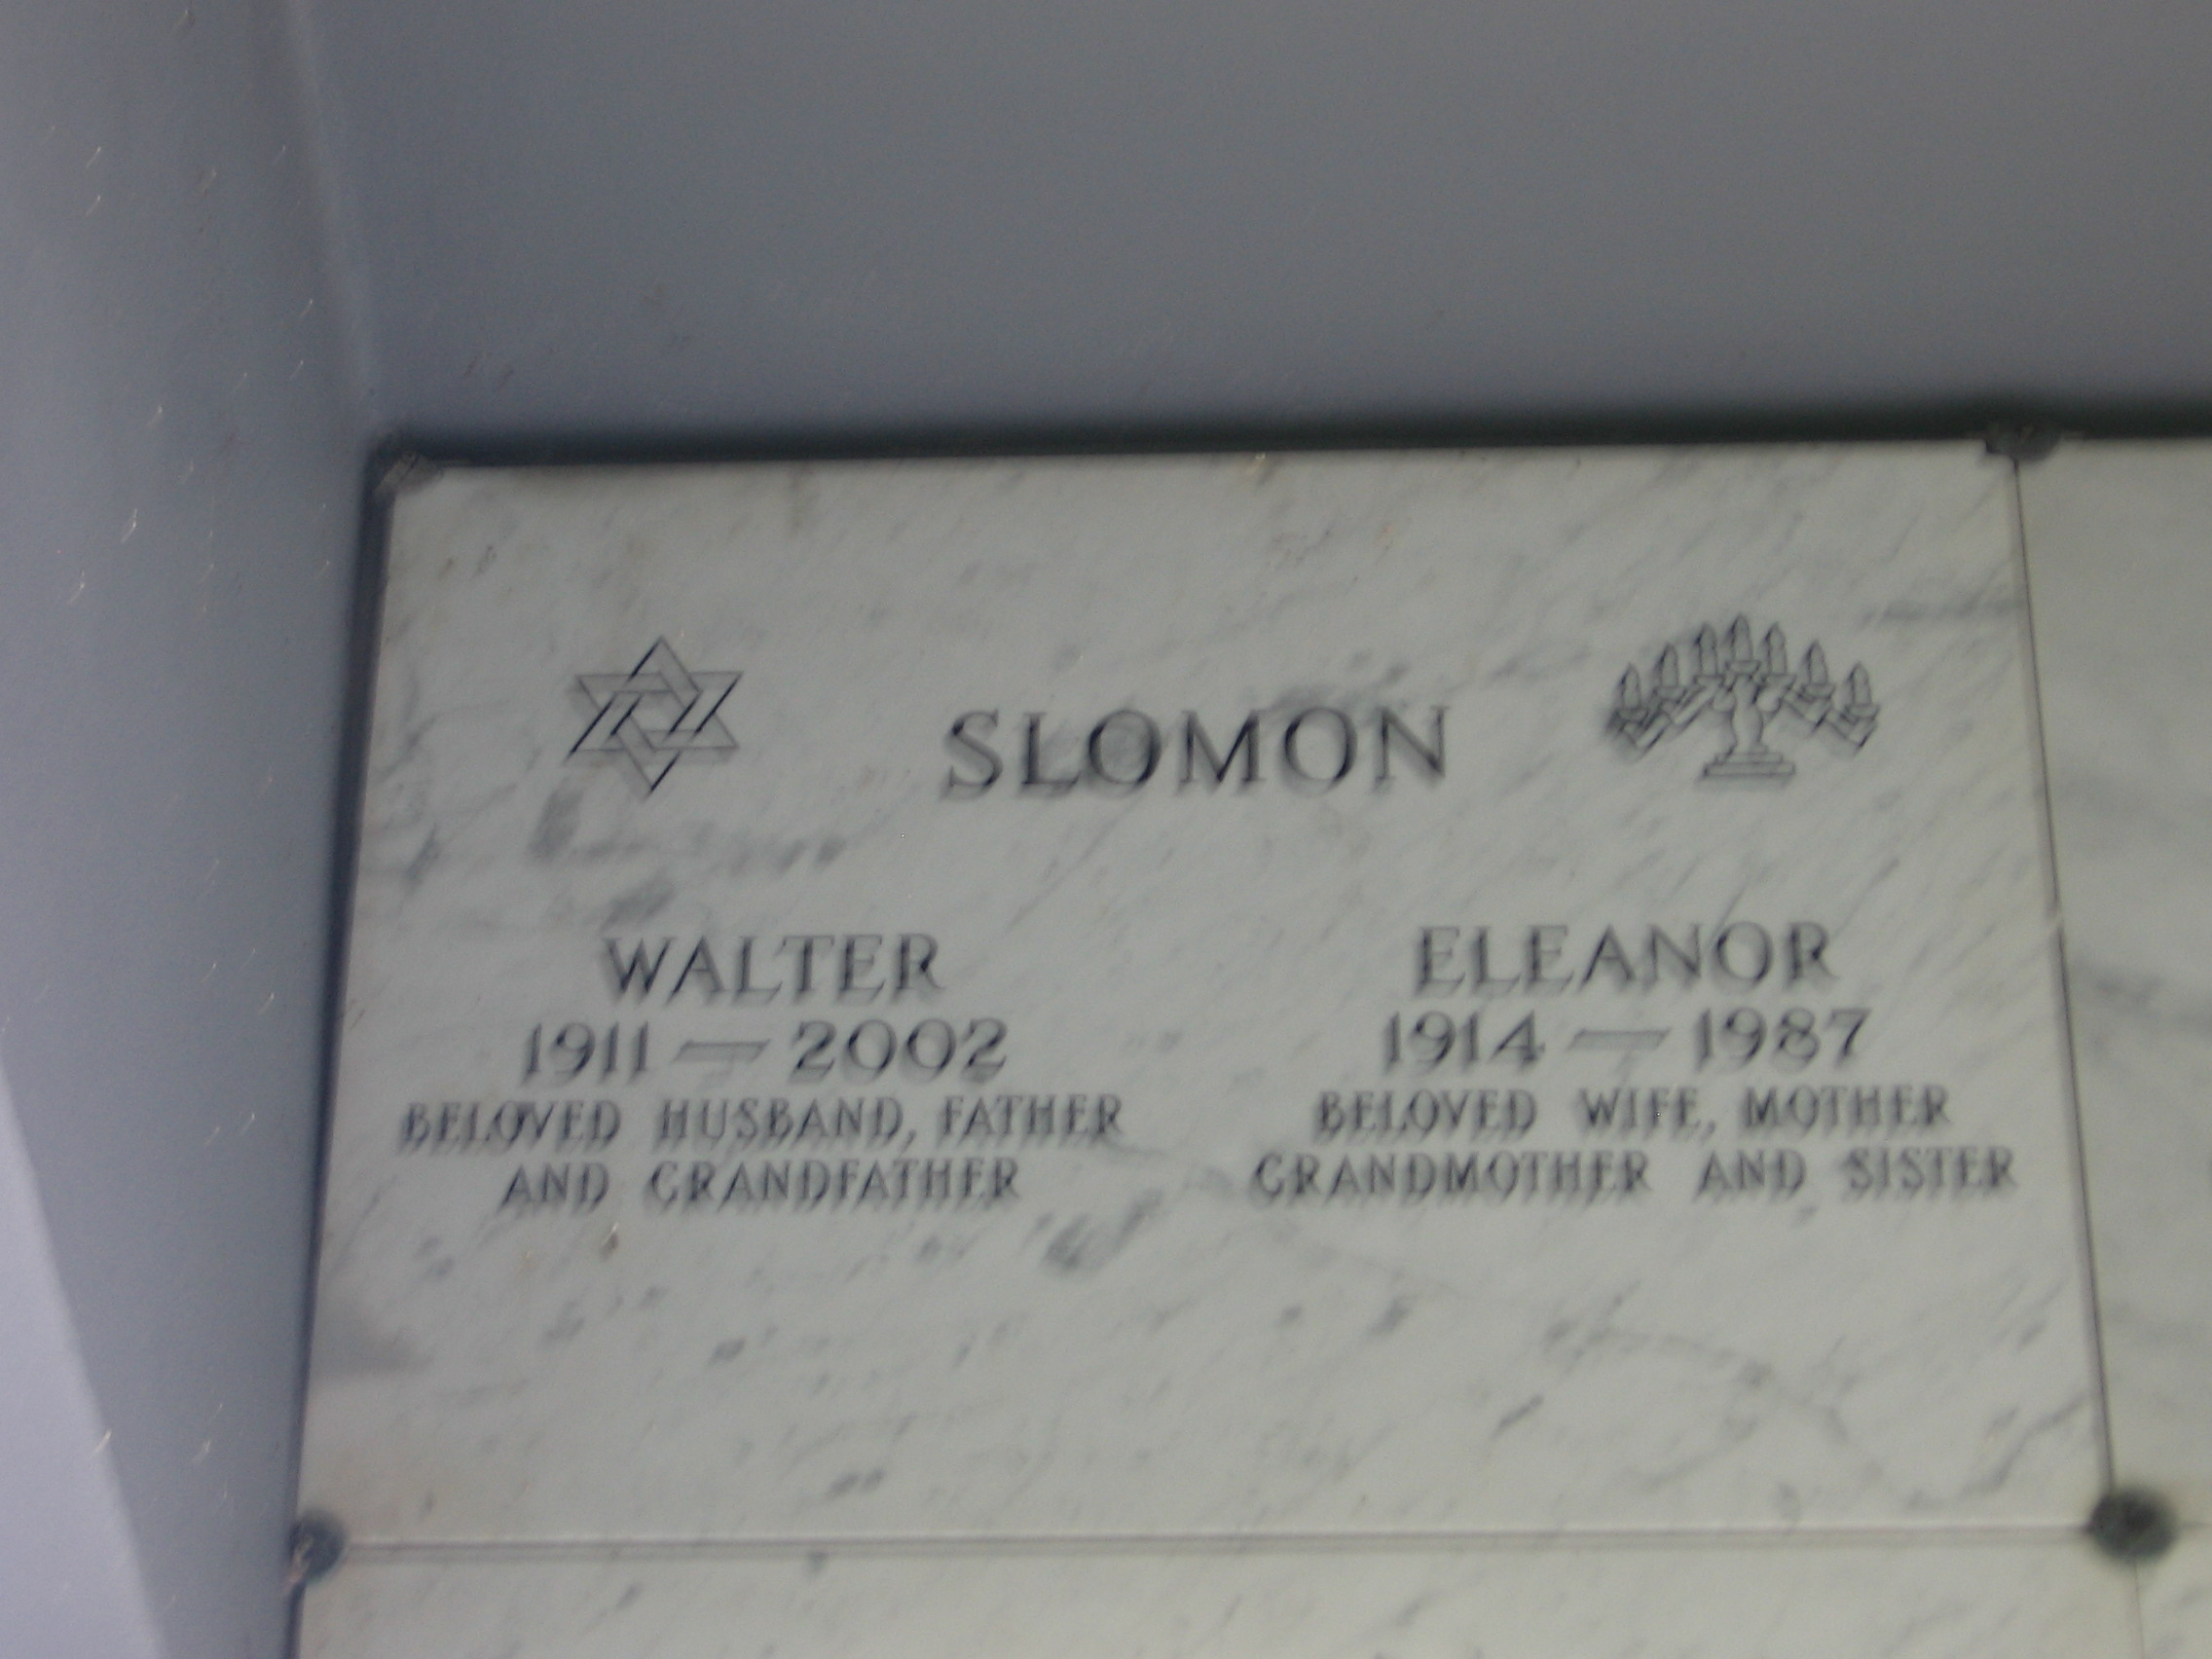 Eleanor Slomon